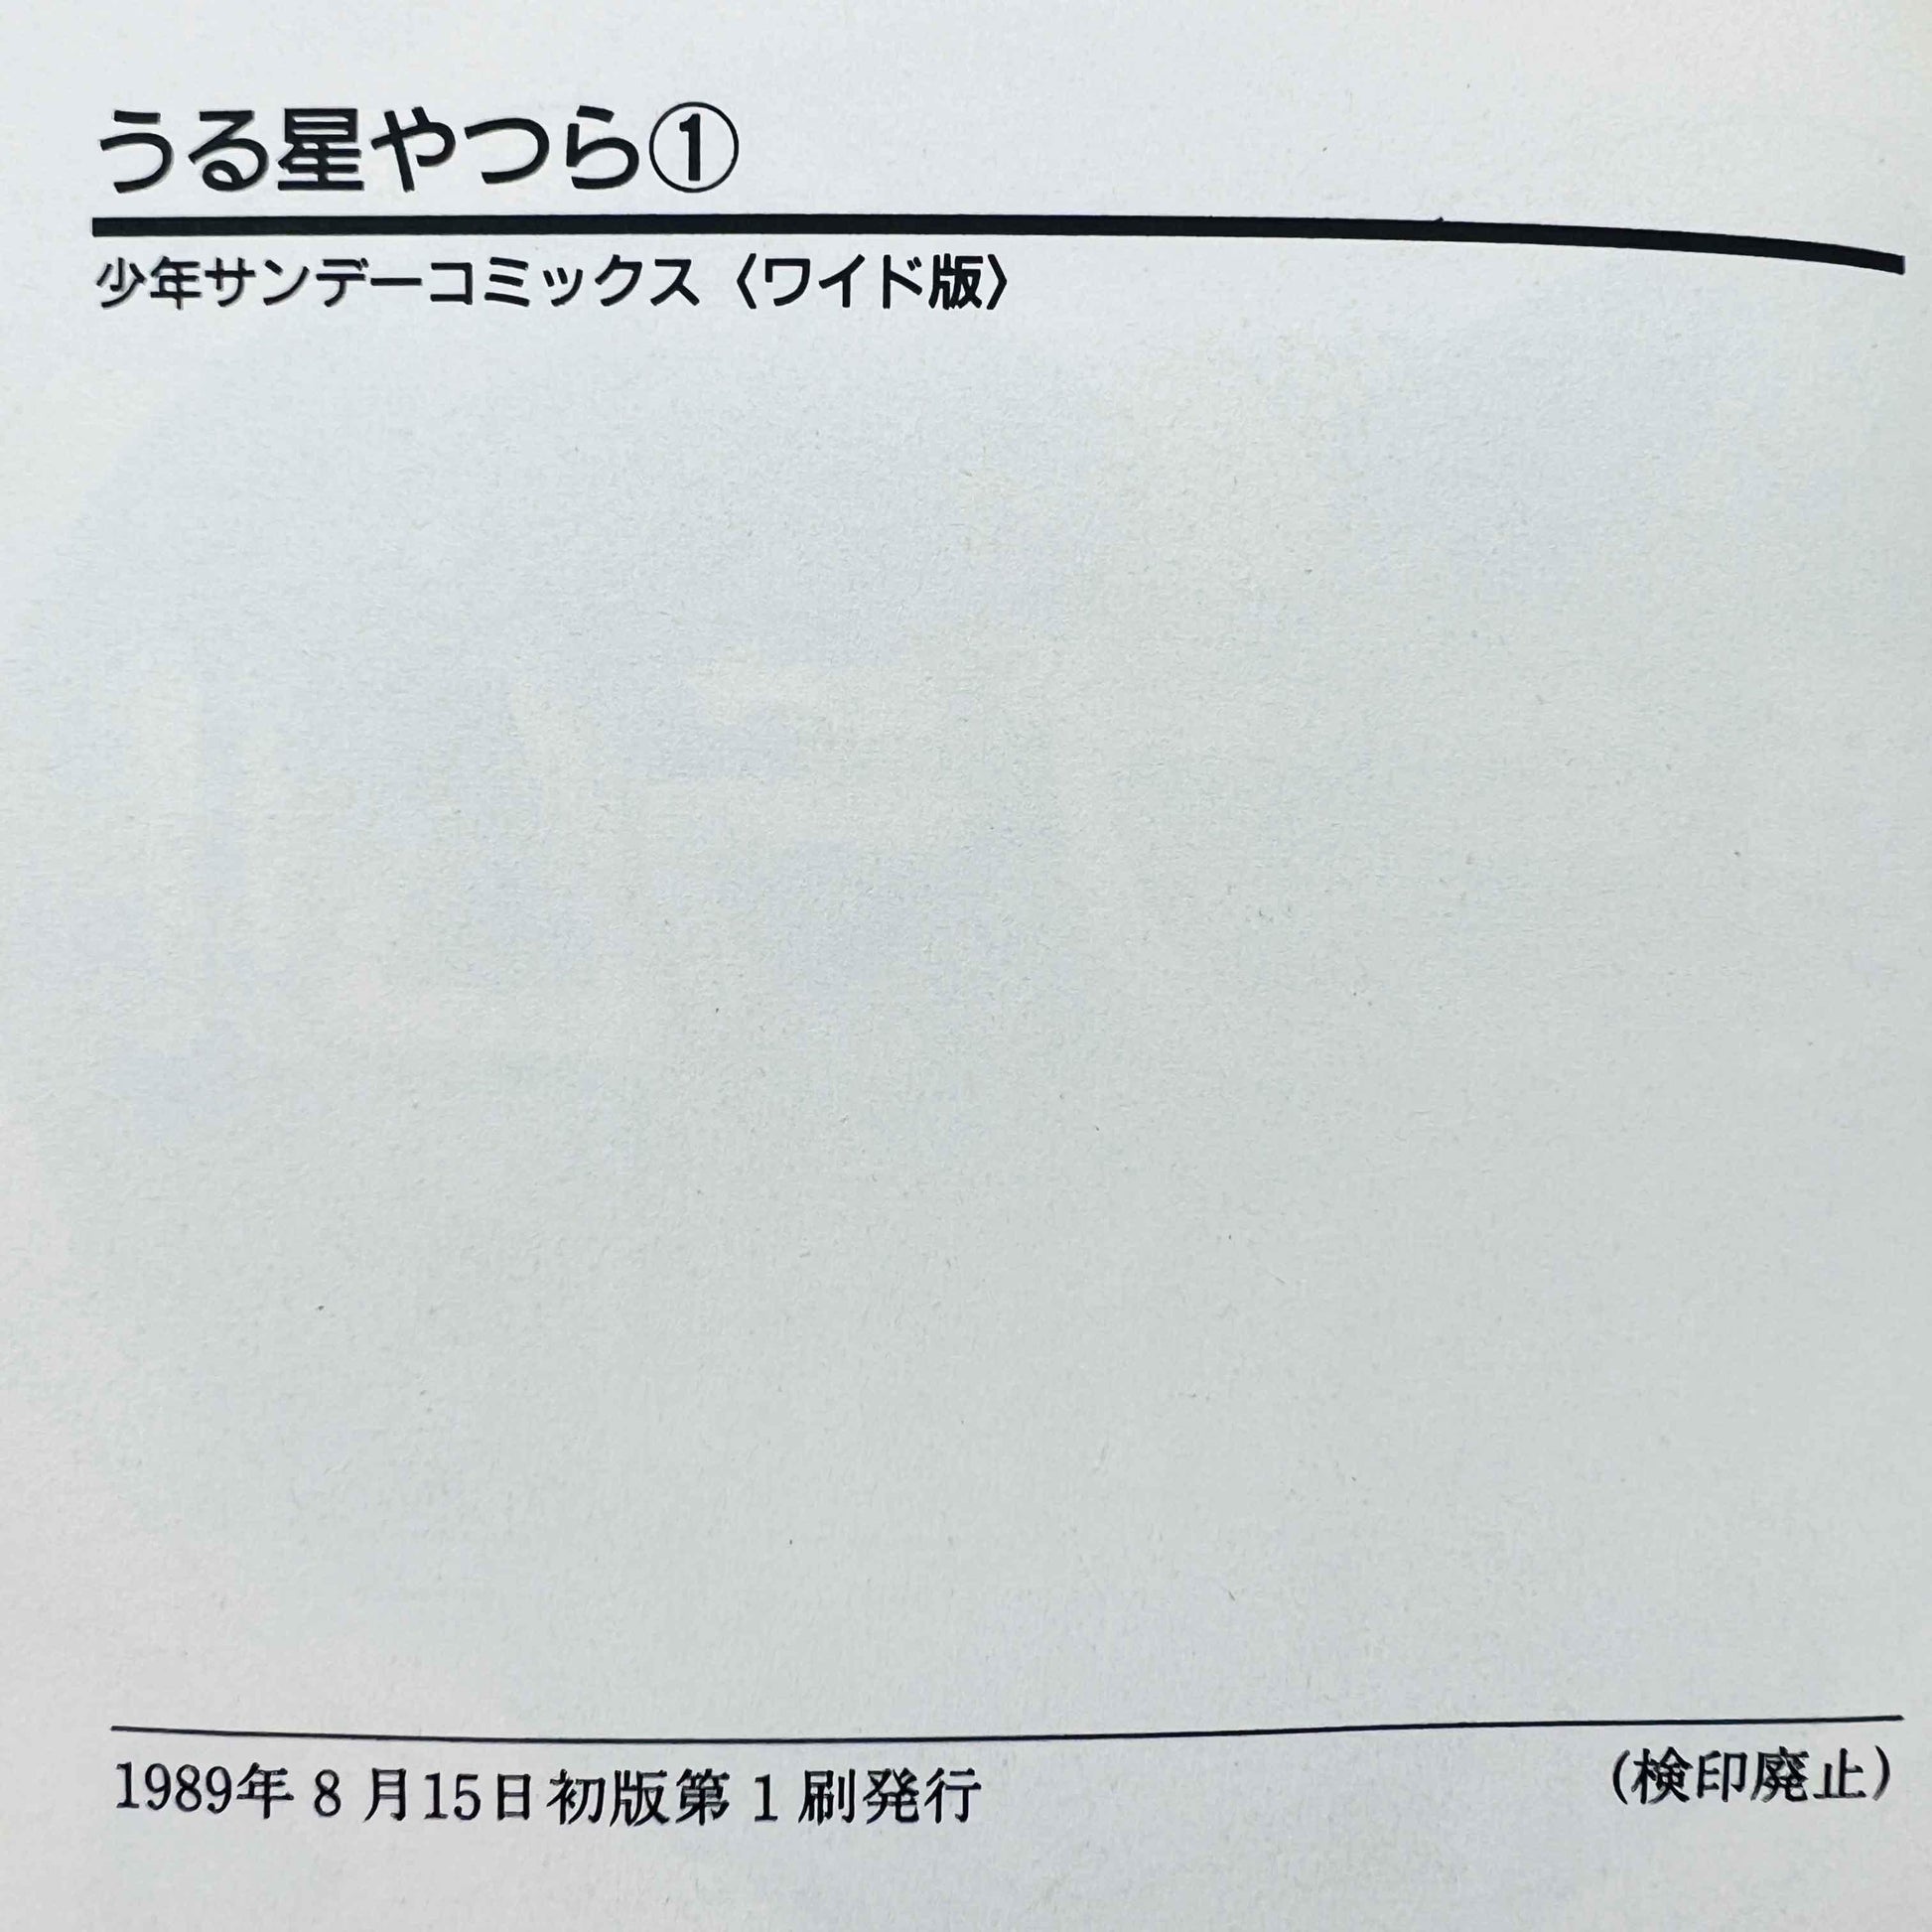 Urusei Yatsura (Wide-ban) - Volume 01 - 1stPrint.net - 1st First Print Edition Manga Store - M-LAMUWIDE-01-001